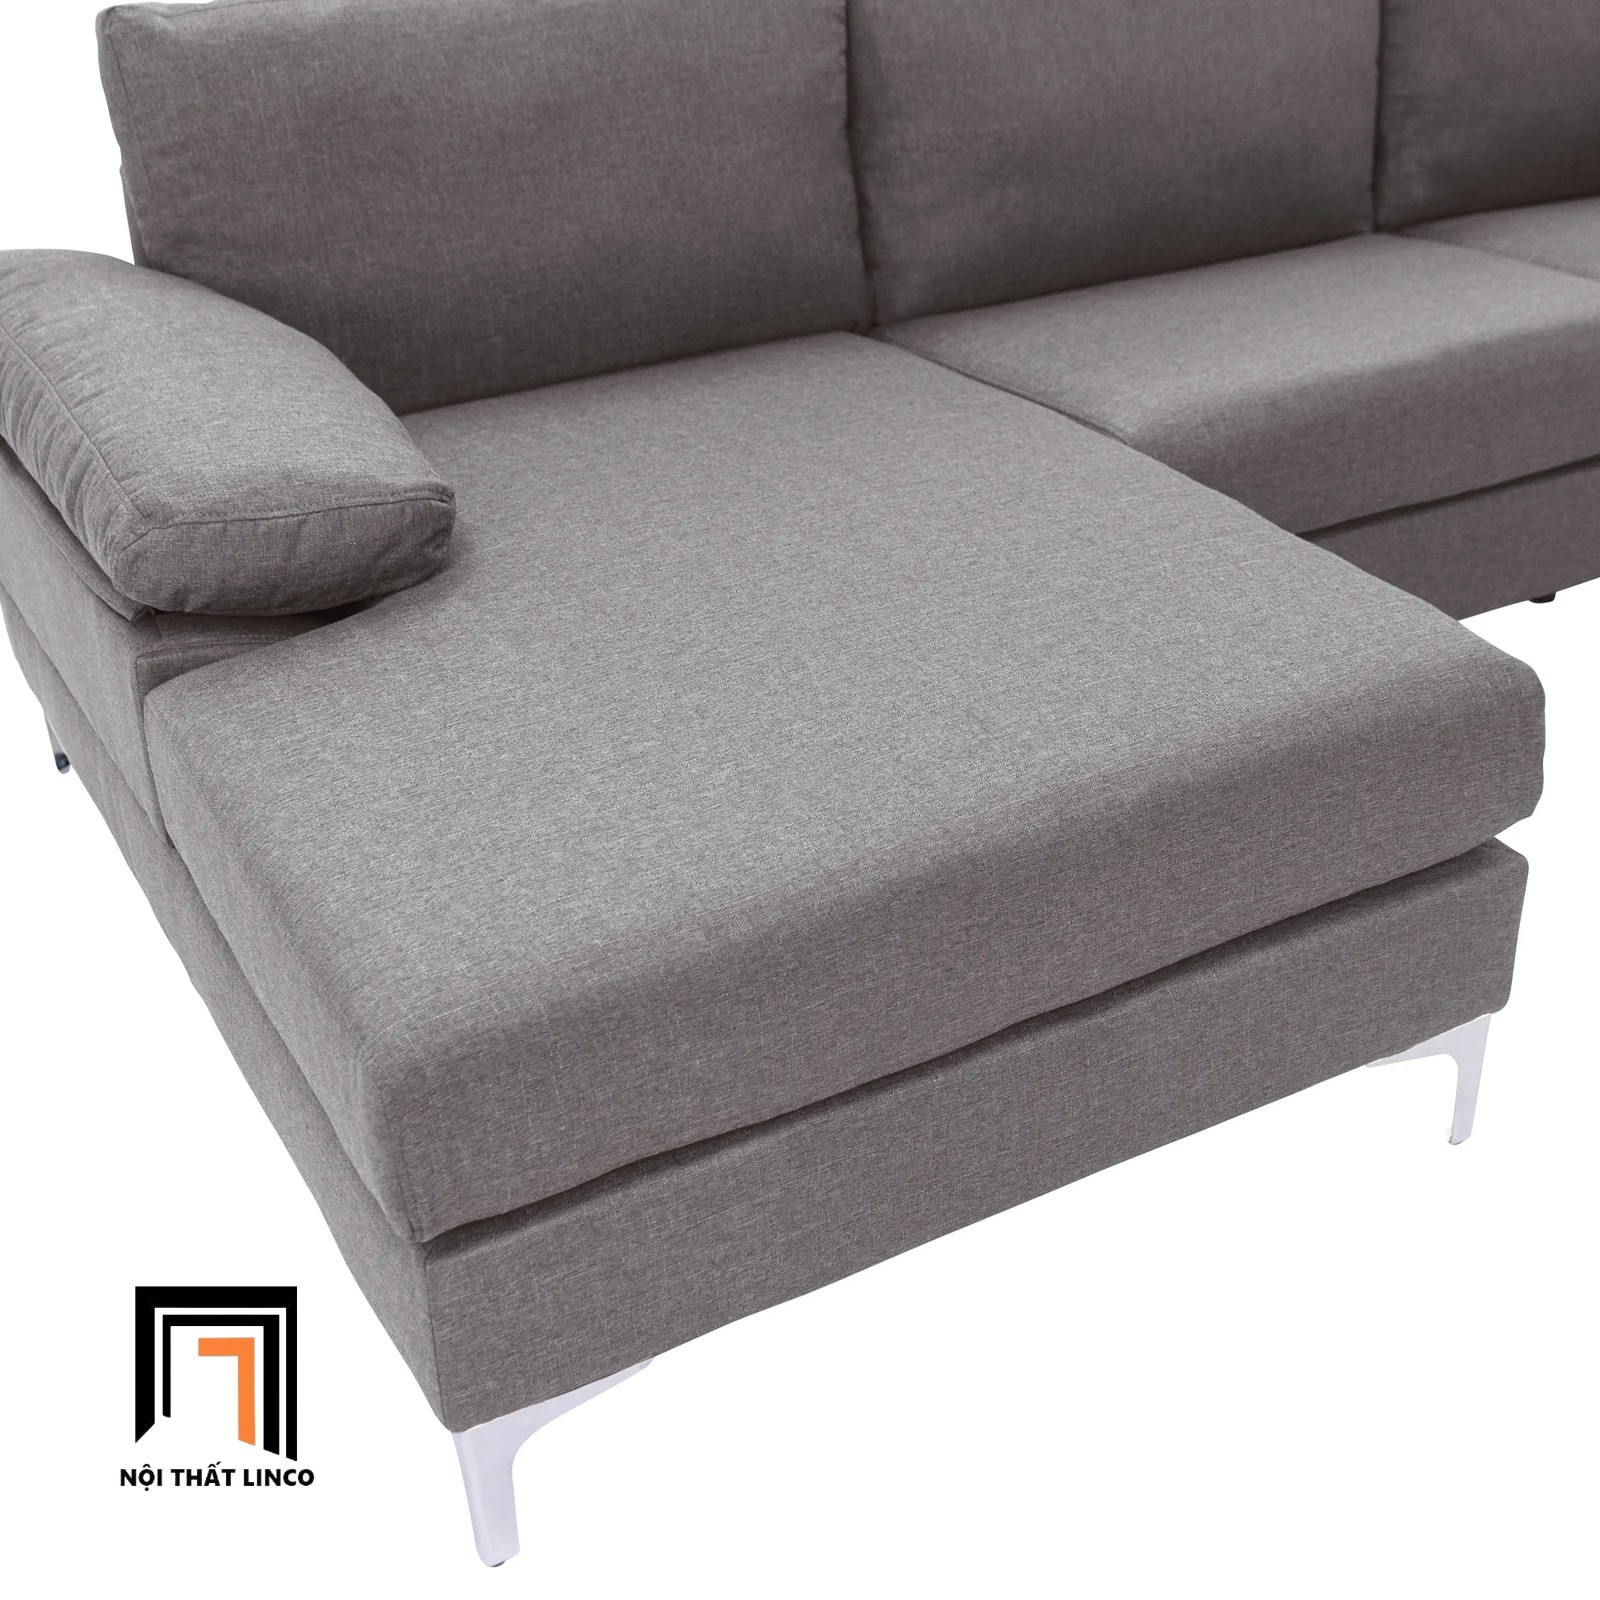 Bộ ghế sofa góc L 2m4 x 1m6 GT4 Ettal cho phòng khách sang trọng